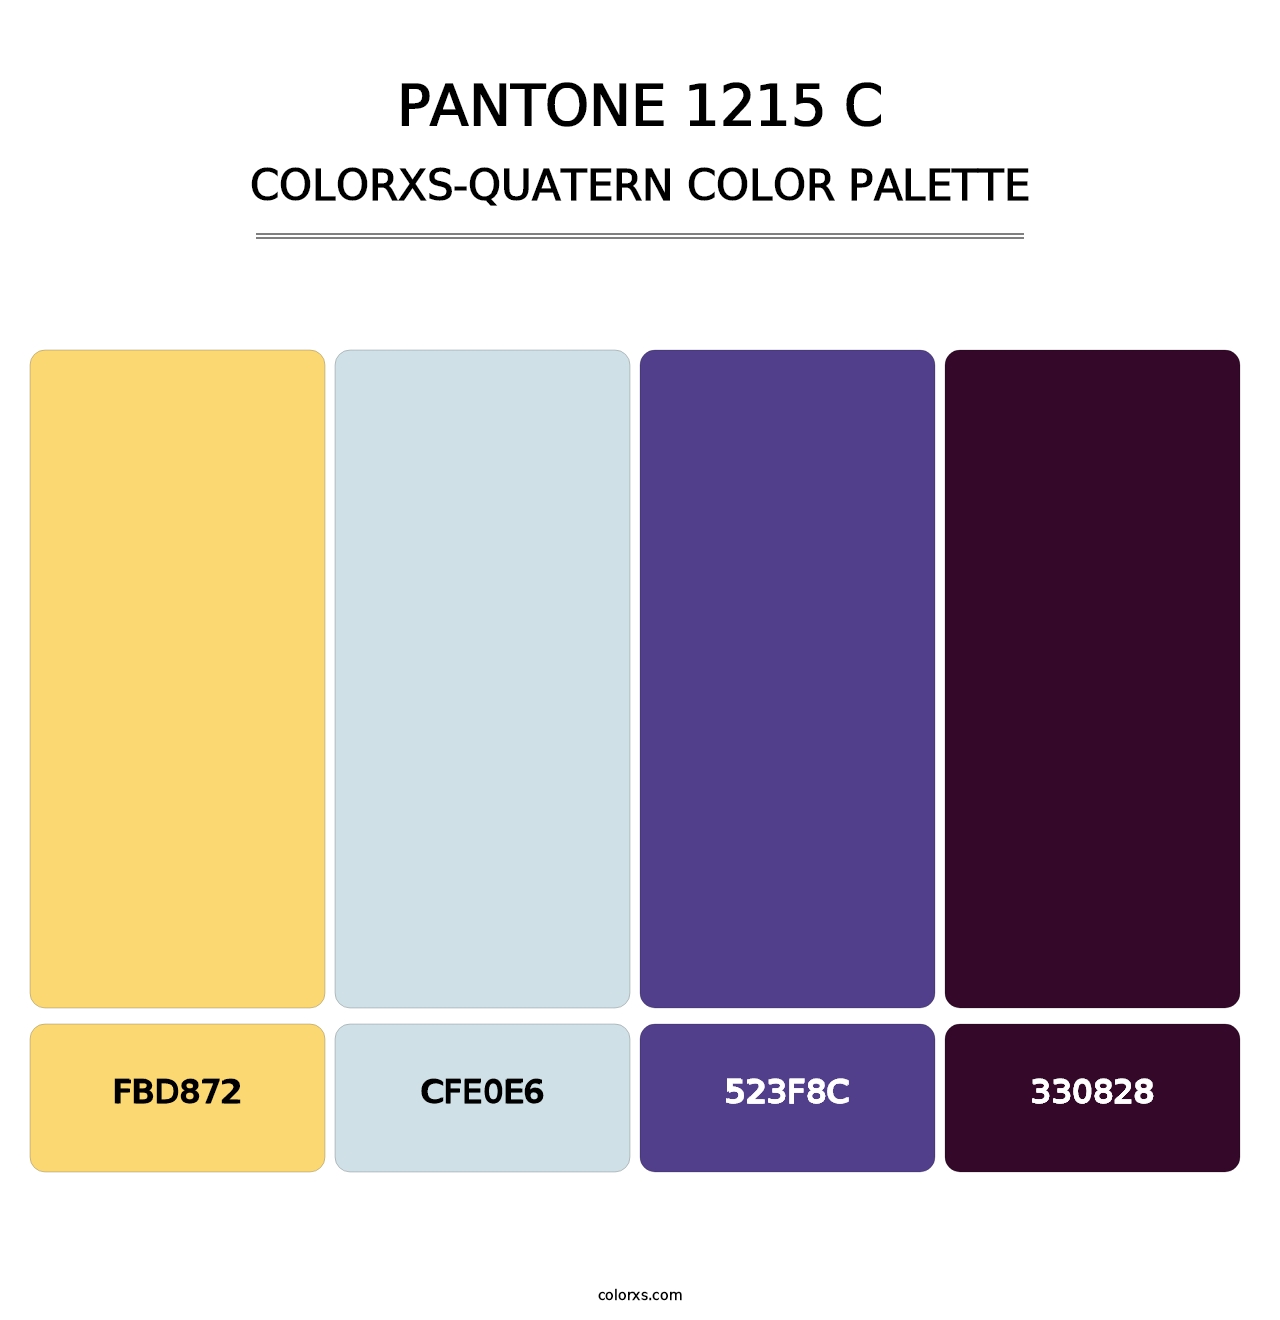 PANTONE 1215 C - Colorxs Quatern Palette